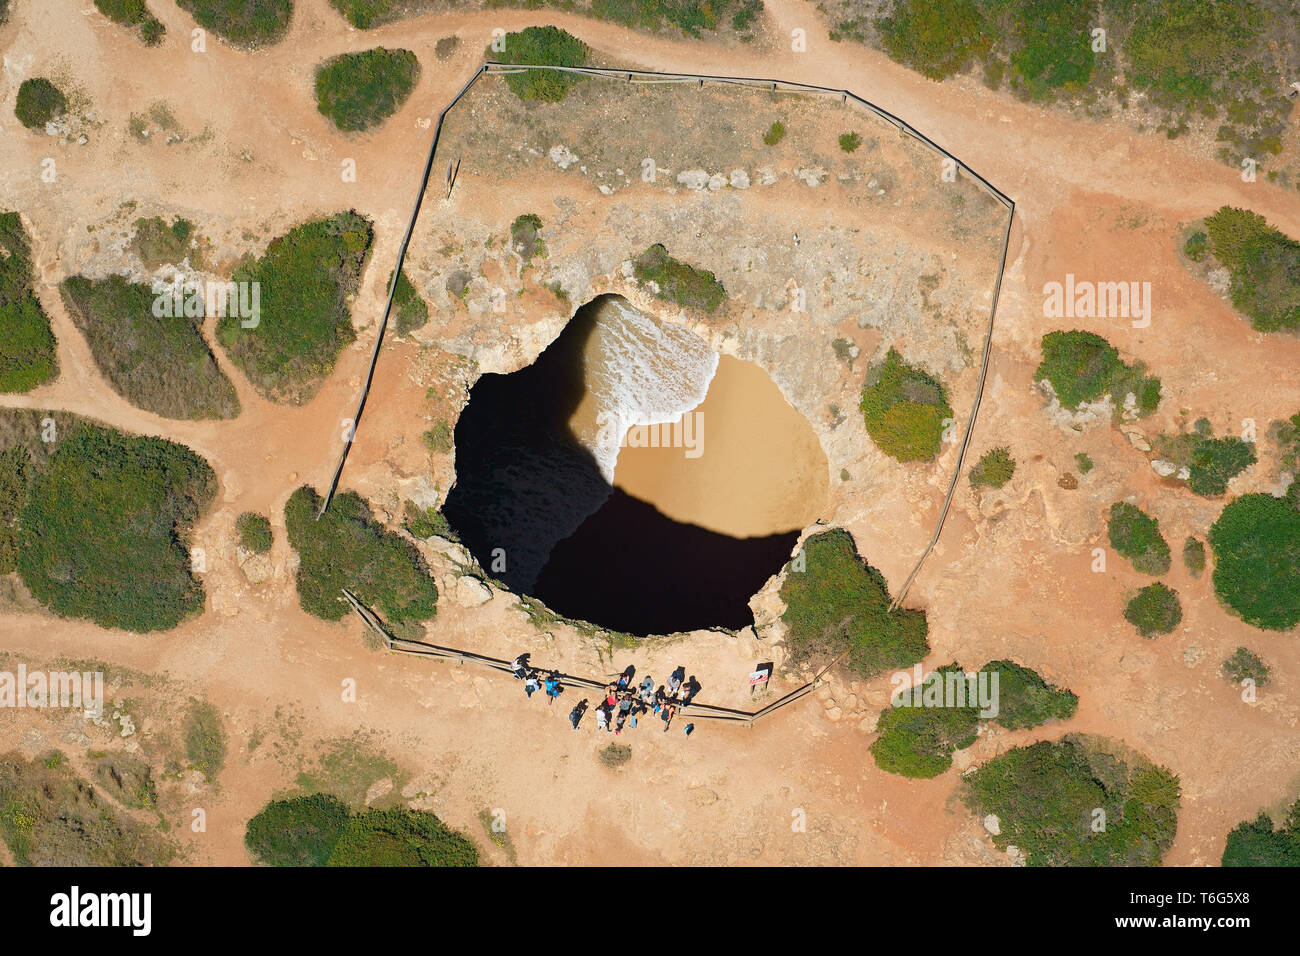 LUFTAUFNAHME. Algar de Benagil: Eine große fotogene Meereshöhle an der zerklüfteten Küste der Algarve. Lagoa, Portugal. Stockfoto